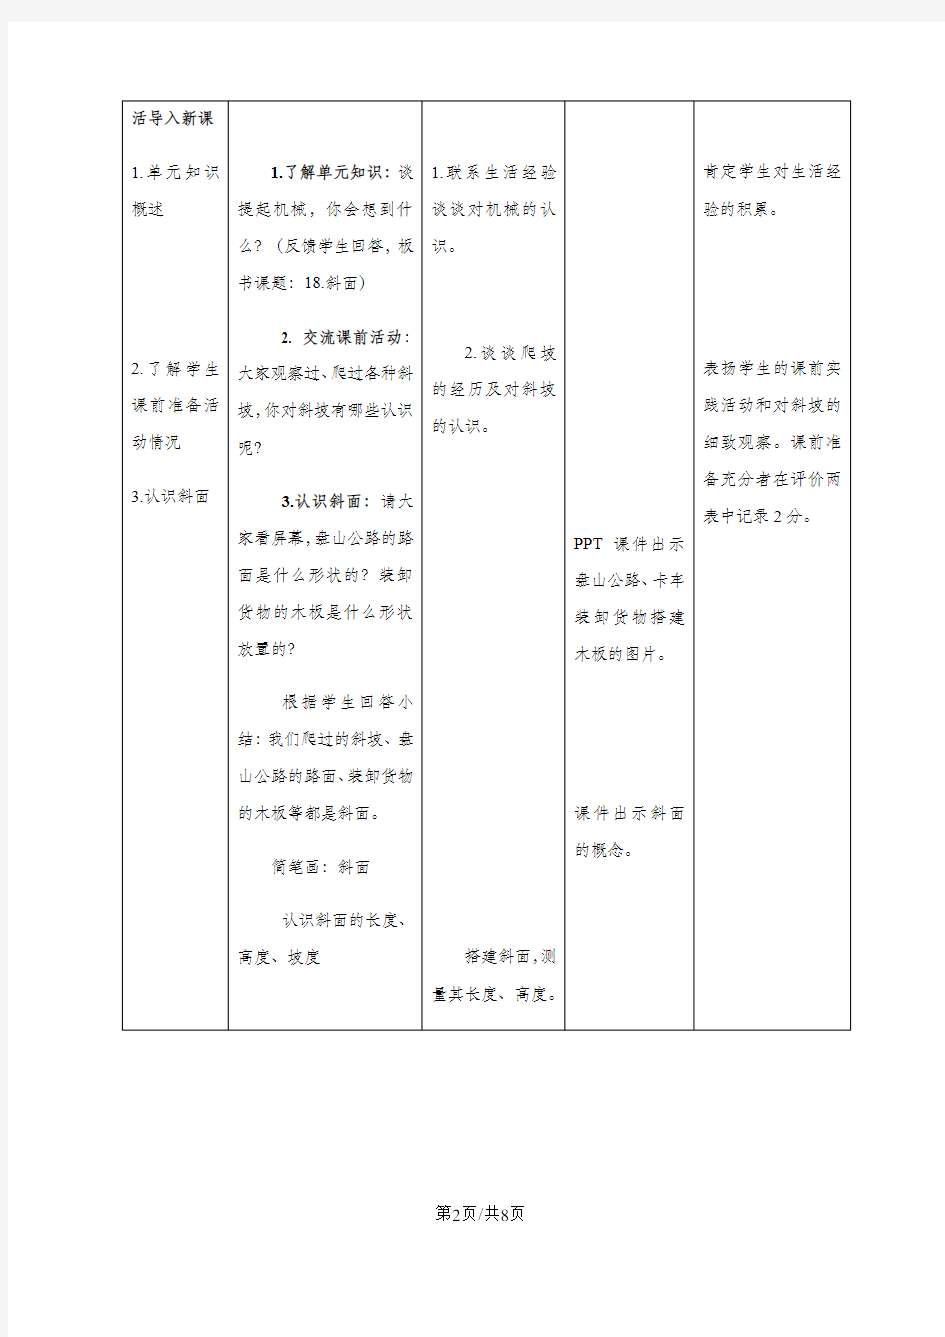 五年级下册科学教案斜面(6)_青岛版(六年制)